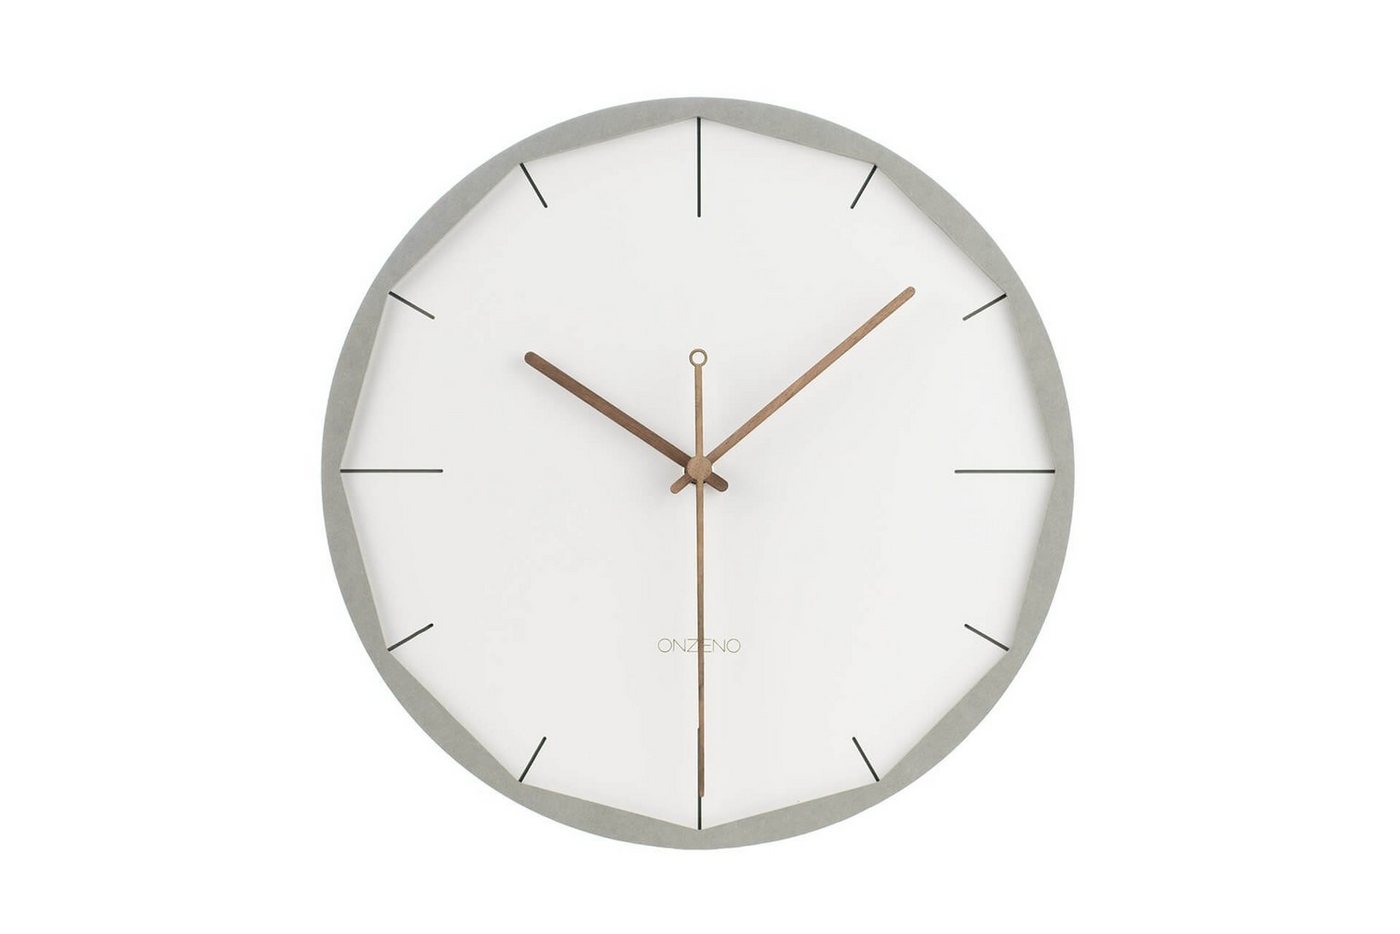 ONZENO Wanduhr THE EDGY. 29x29x0.5 cm (handgefertigte Design-Uhr) von ONZENO